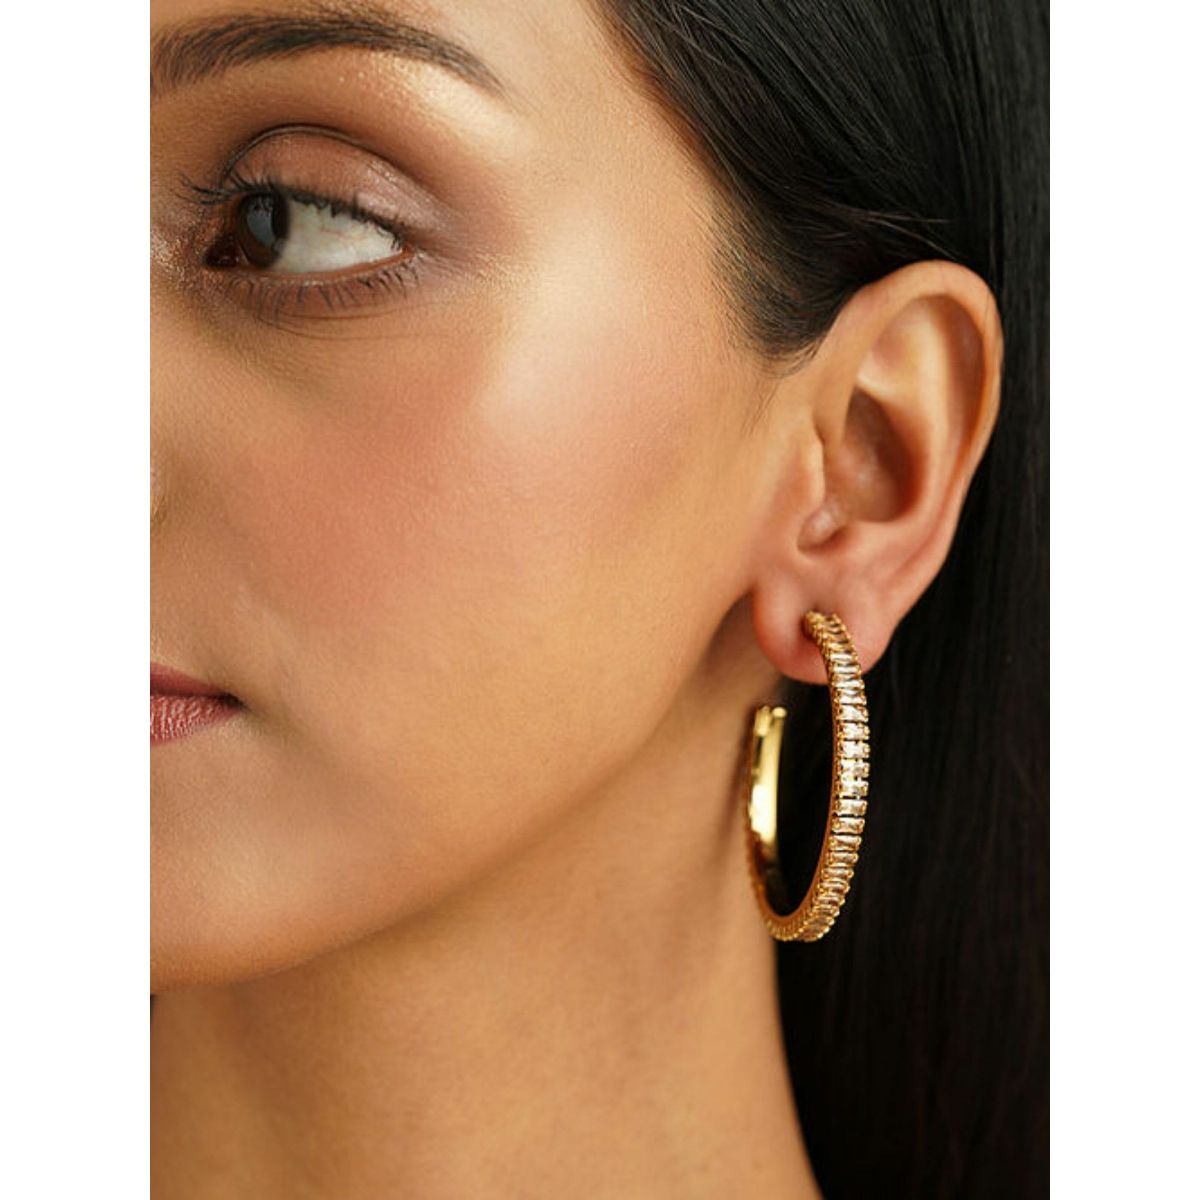 18K Rose gold Diamond Earrings for Women